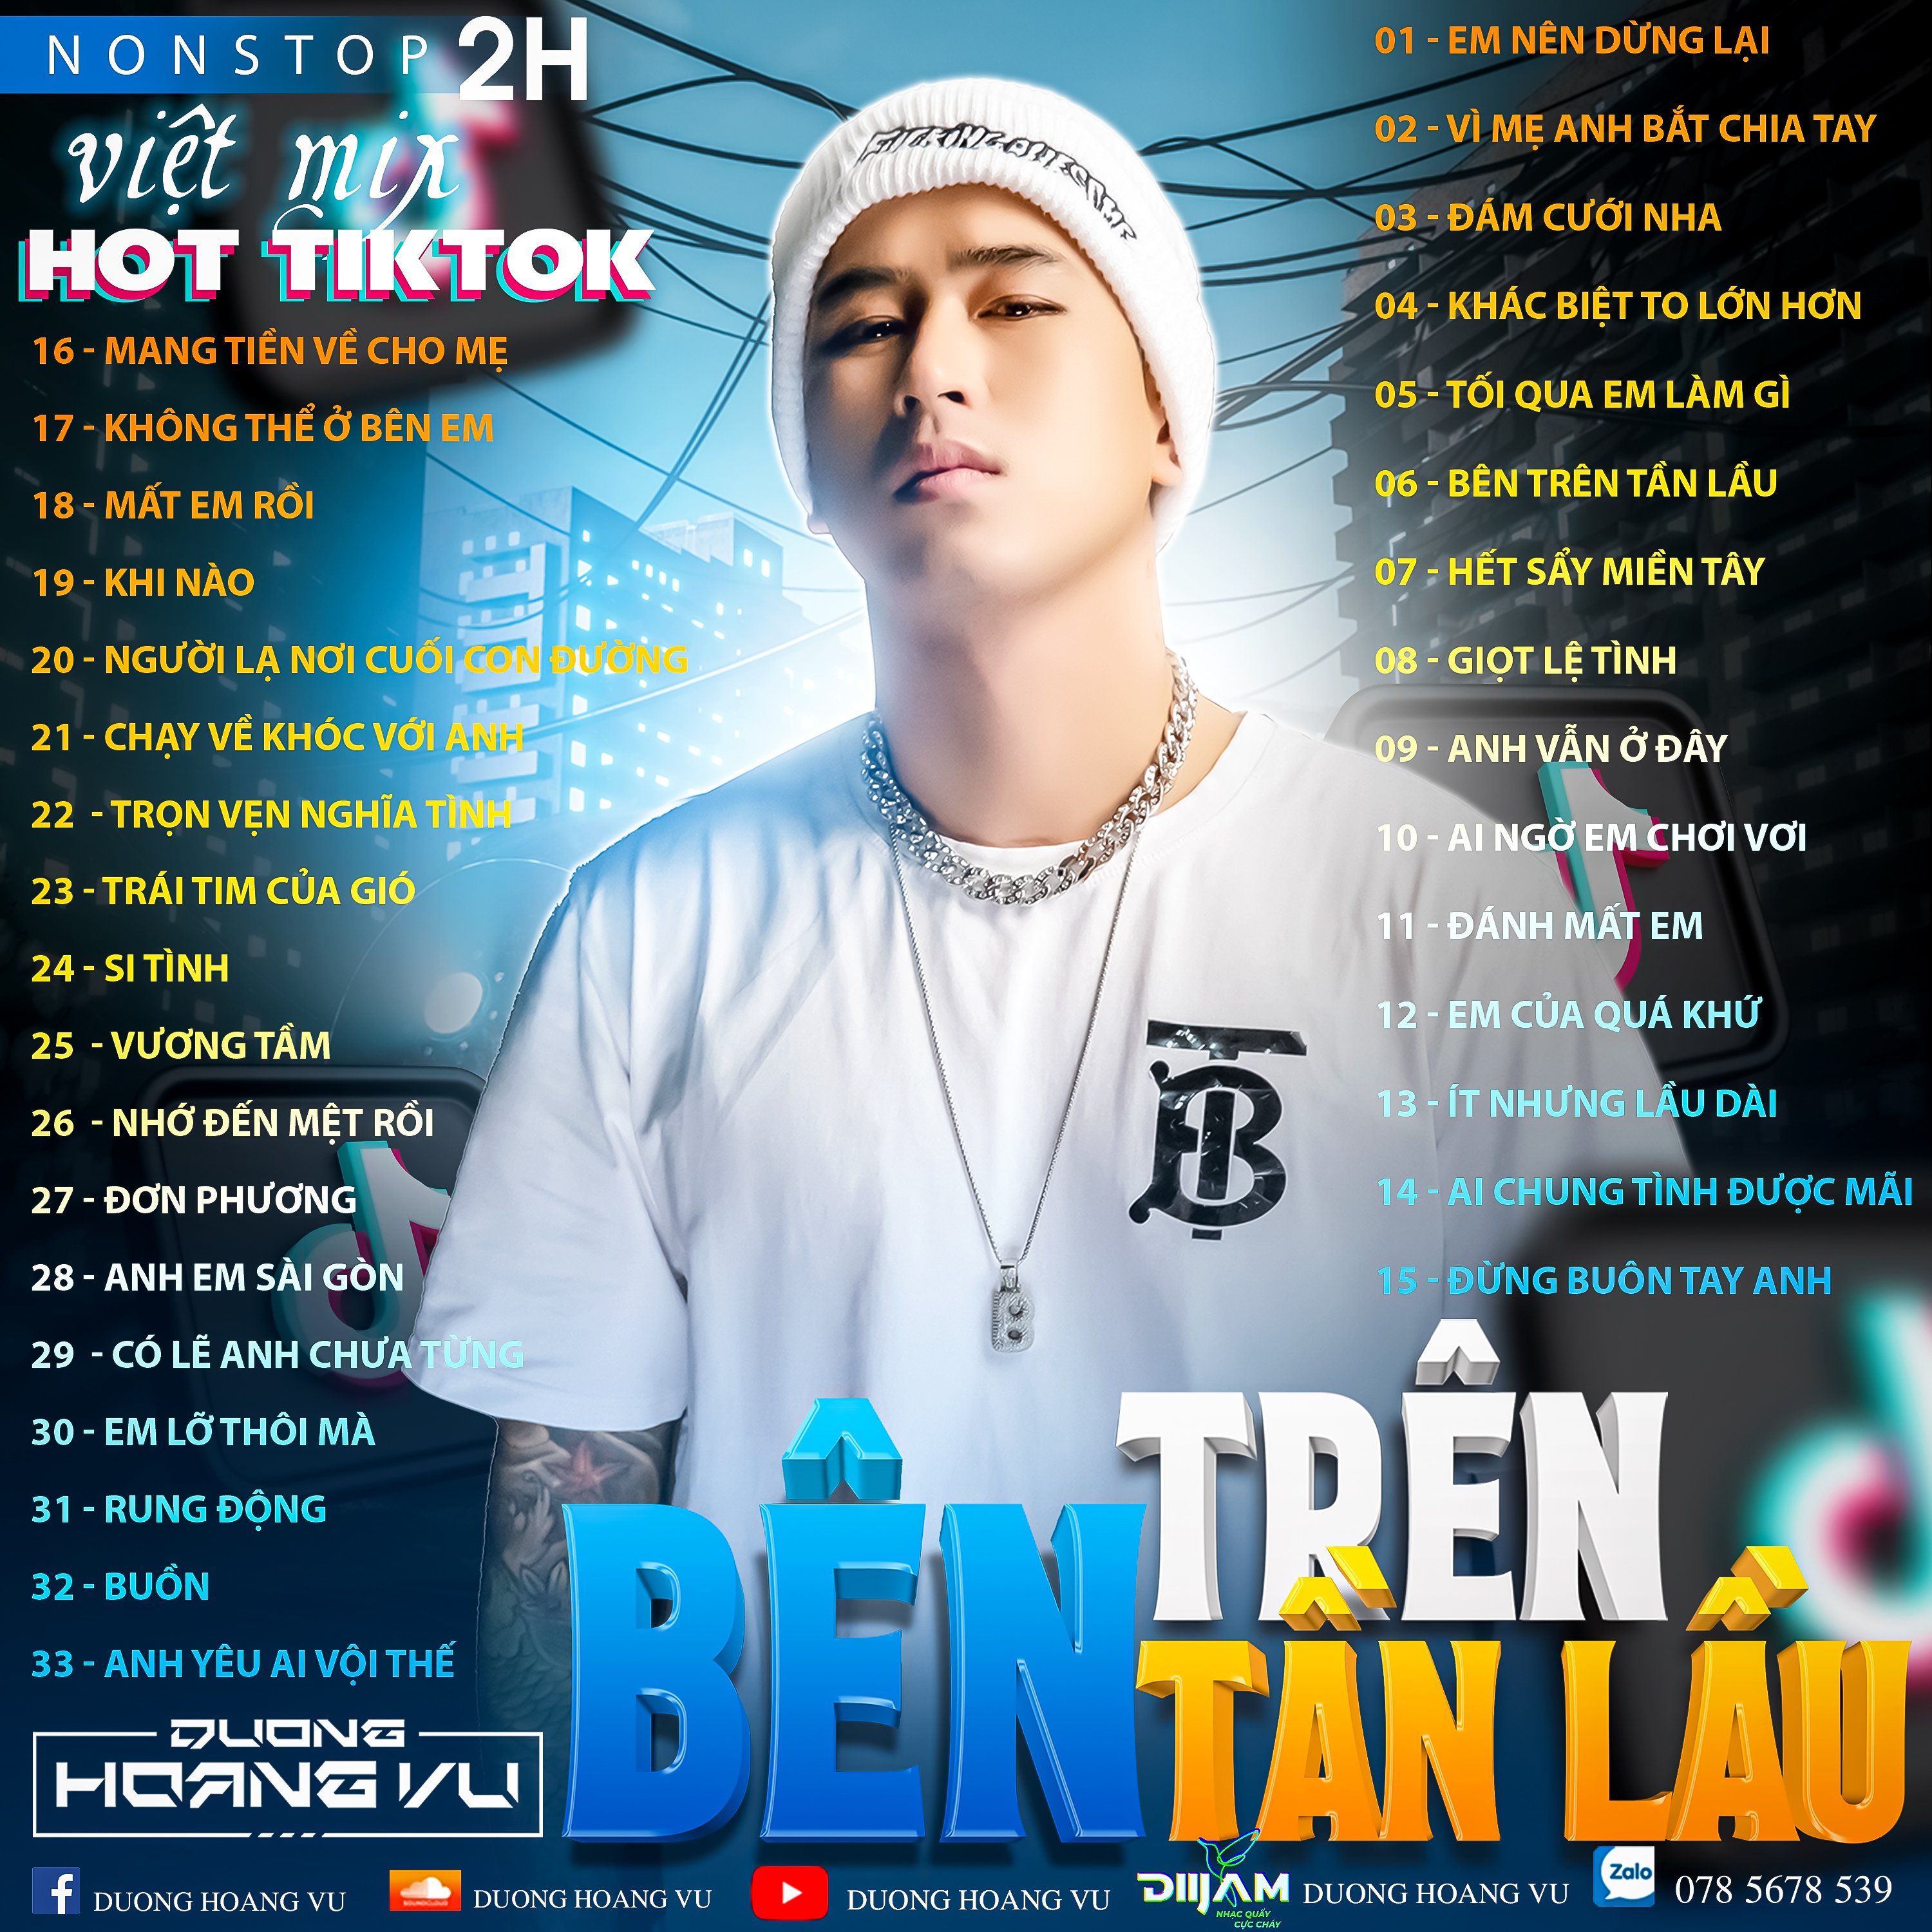 डाउनलोड (Demo ) Nst Việt Mix Hot tiktok 2h - 2022 - DJ Dương Hoàng Vũ Mix Mua Full IB Zalo 078.5678.539